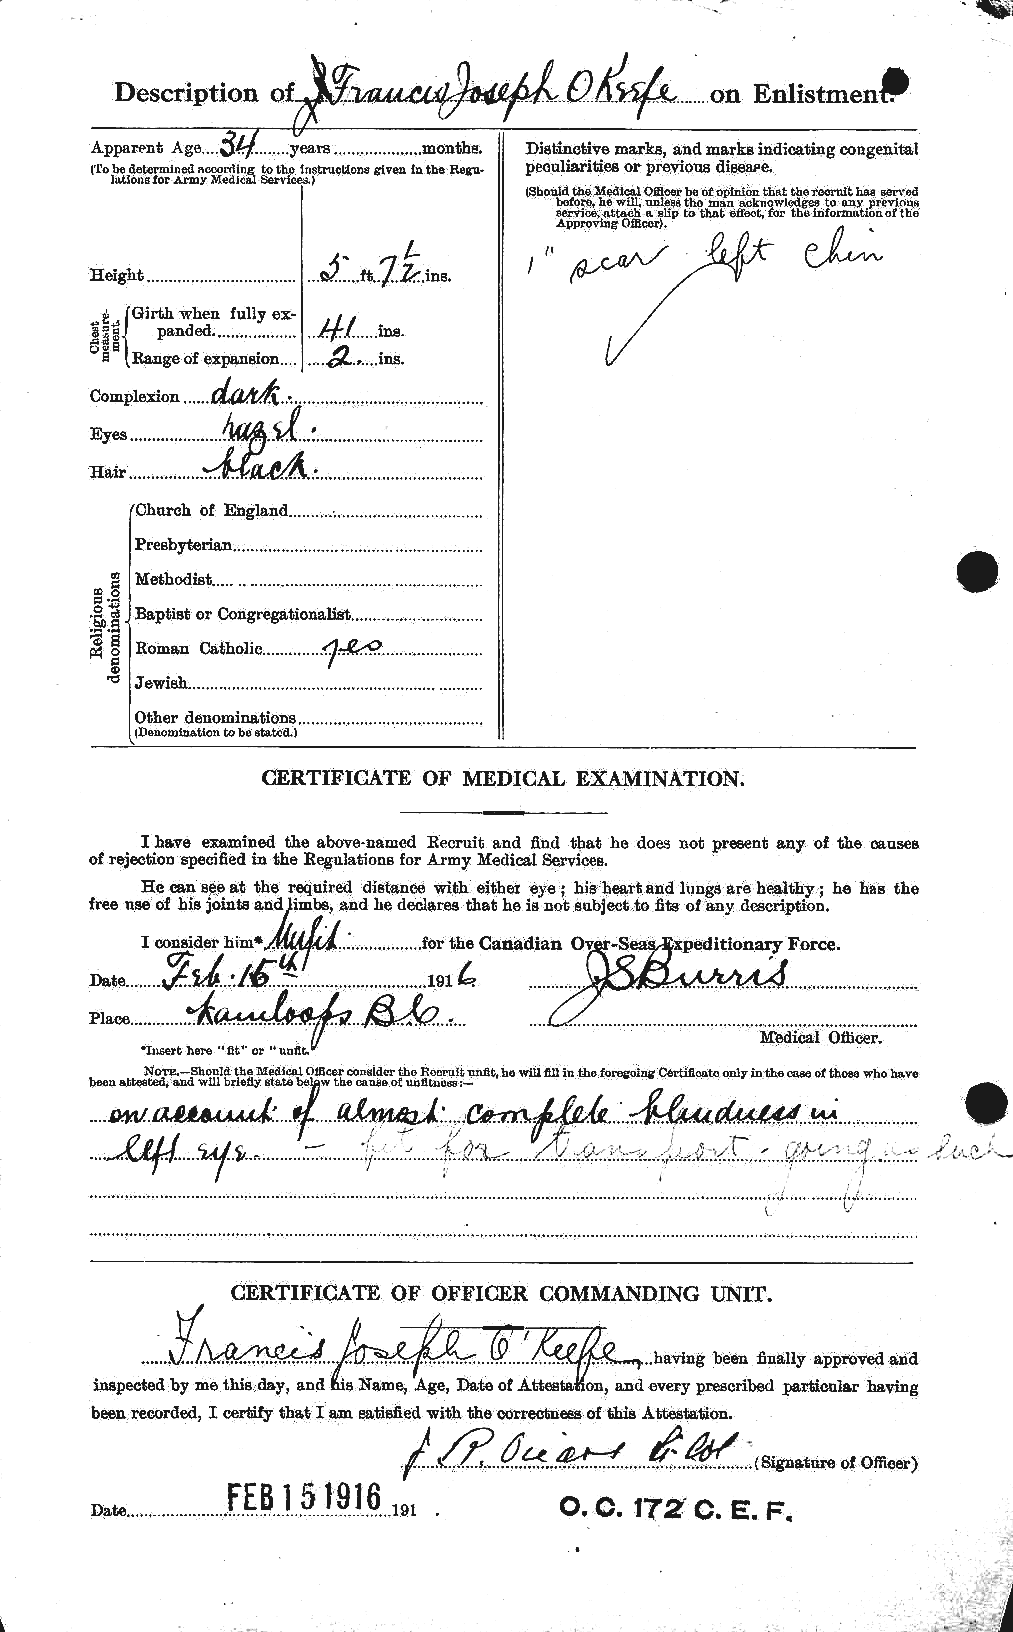 Dossiers du Personnel de la Première Guerre mondiale - CEC 556311b